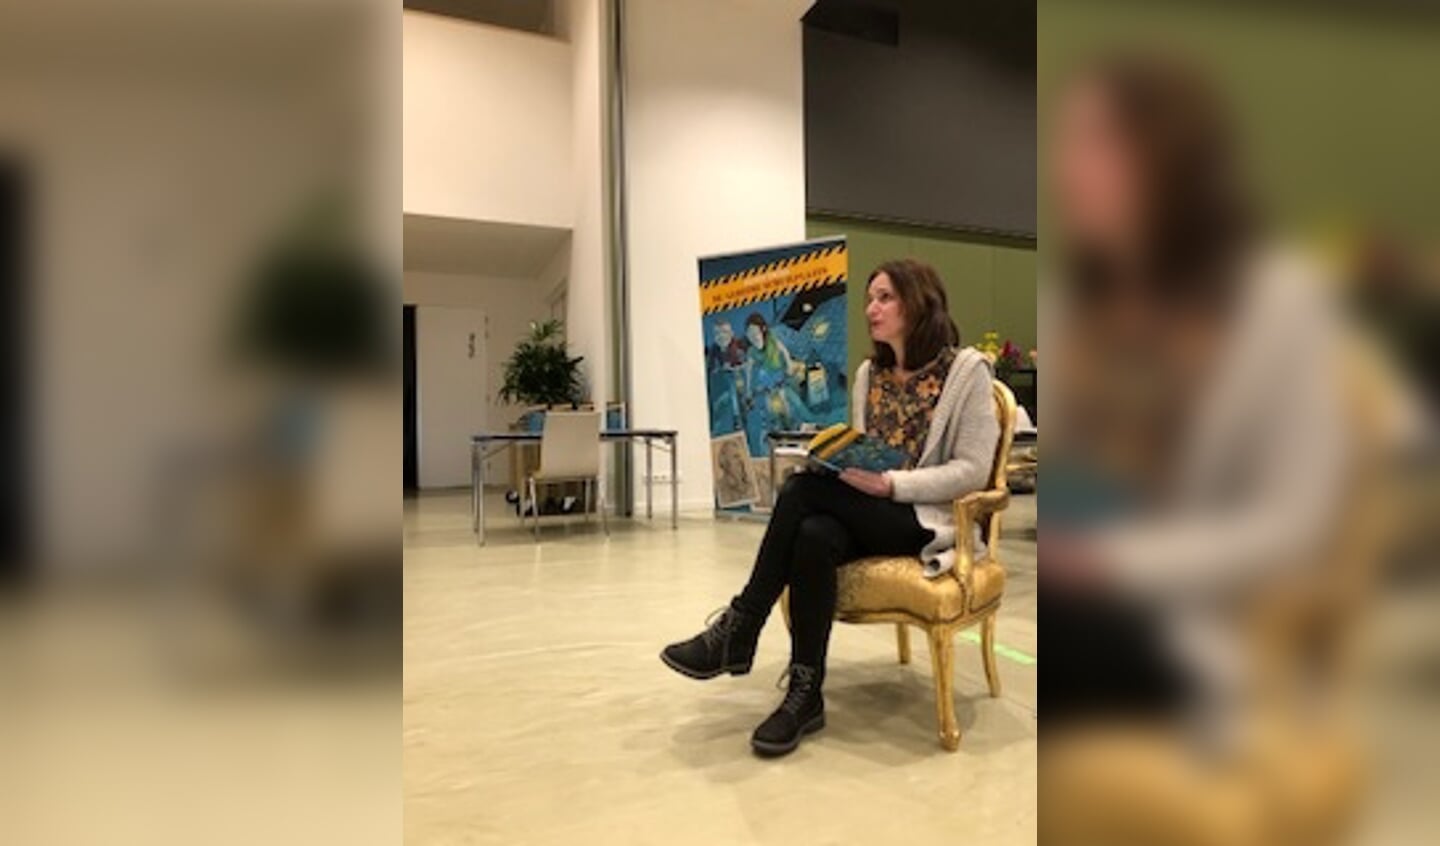 Schrijfster Annette van der Plas heeft vorige week op de School met de Bijbel in Noordeloos voorgelezen uit haar nieuwste boek ‘De geheime schuilplaats’